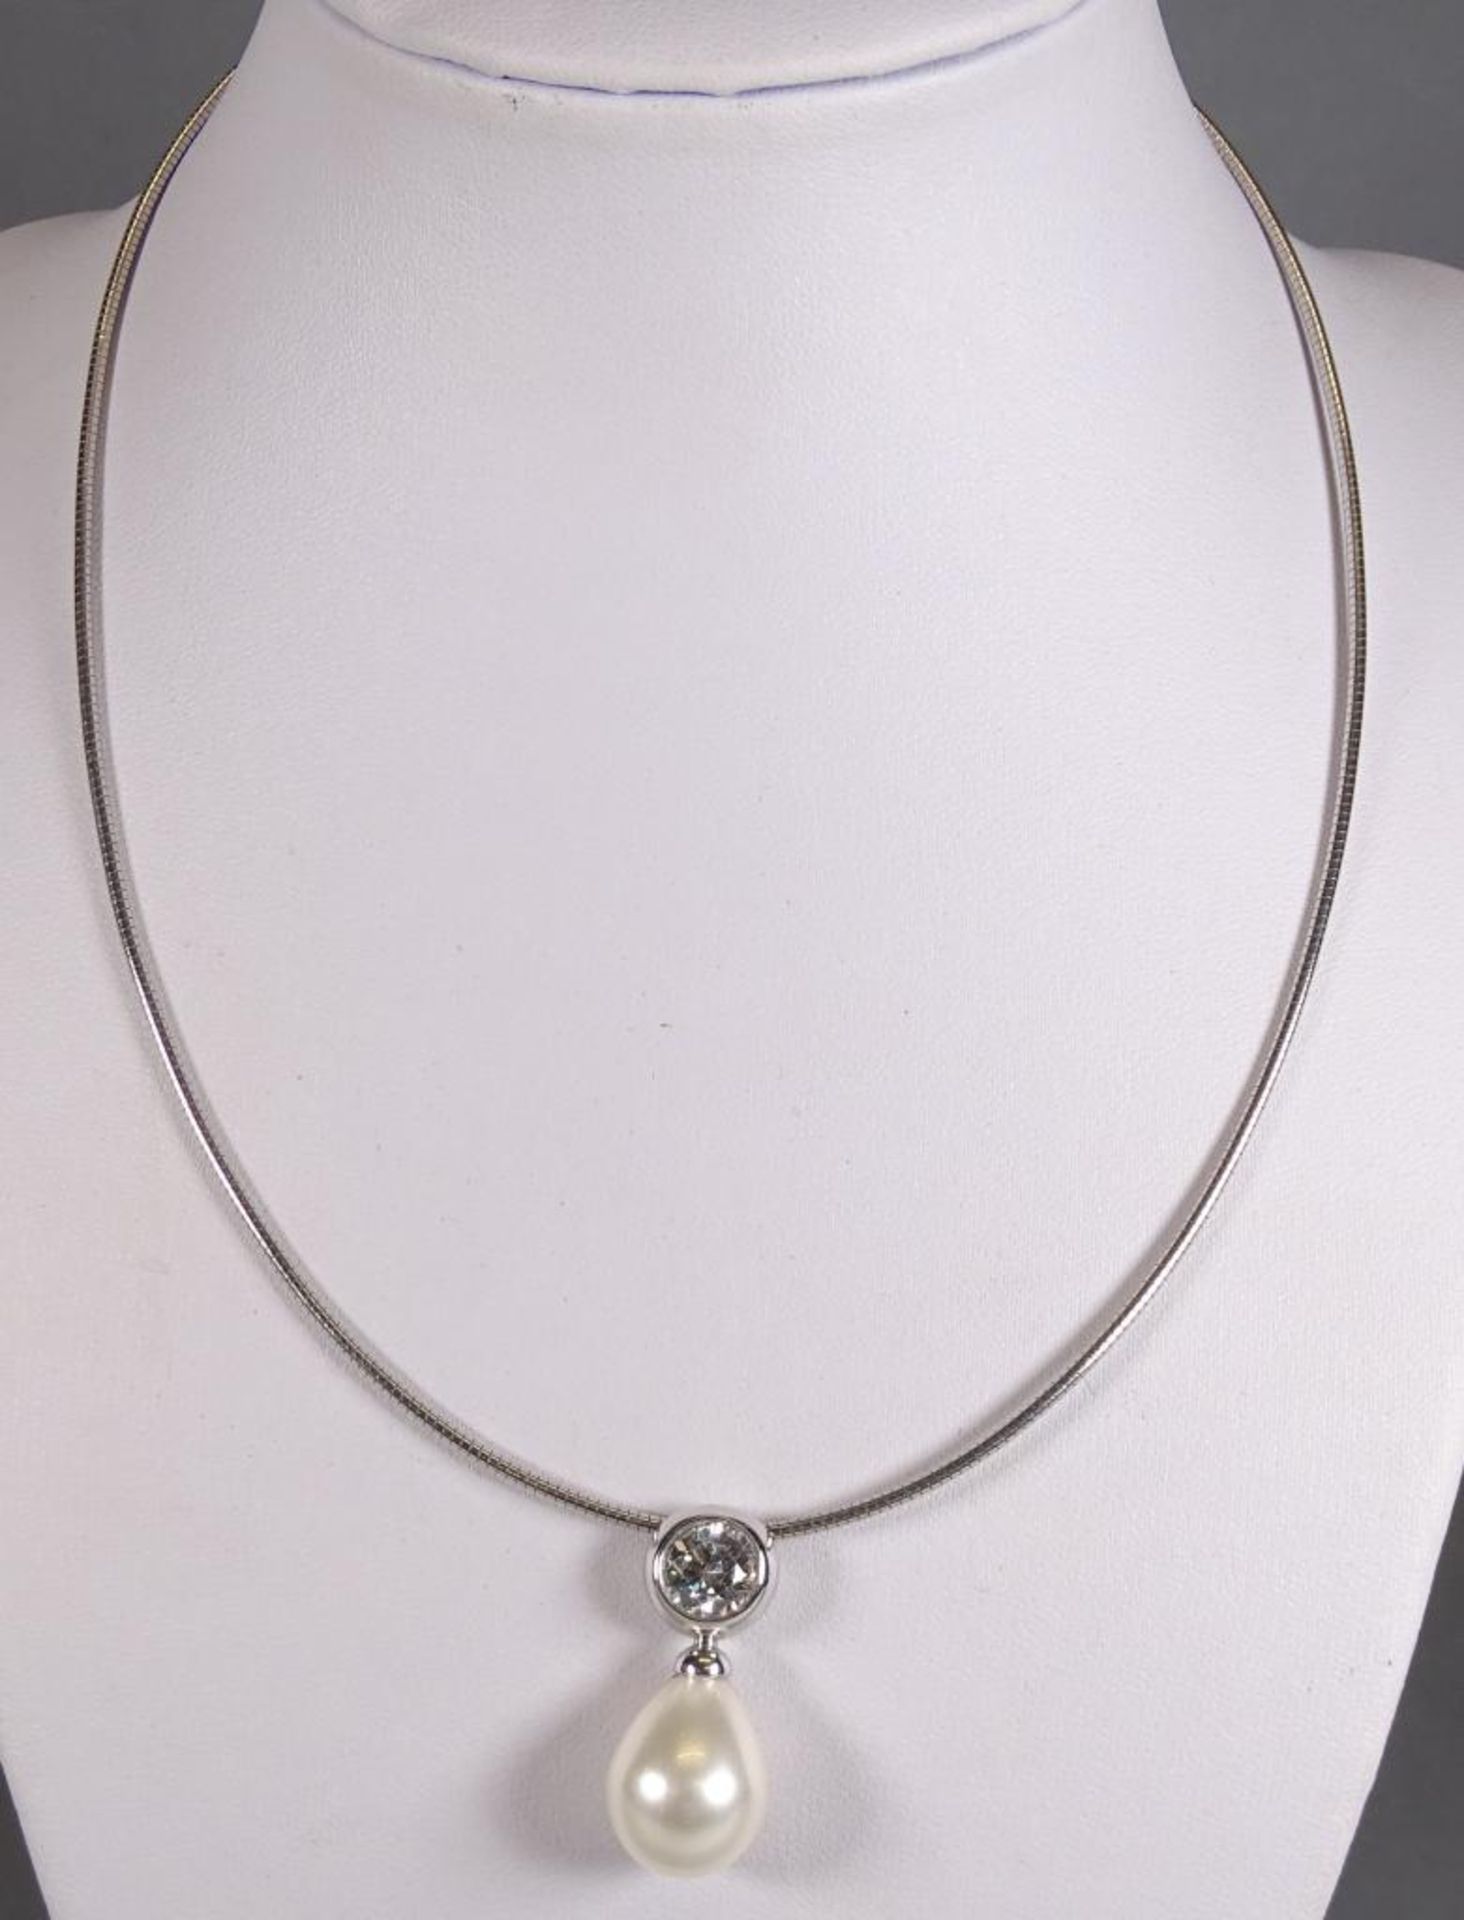 Halskette mit Muschelkernperle,Silber,ca.L- 40cm,11,5gr.